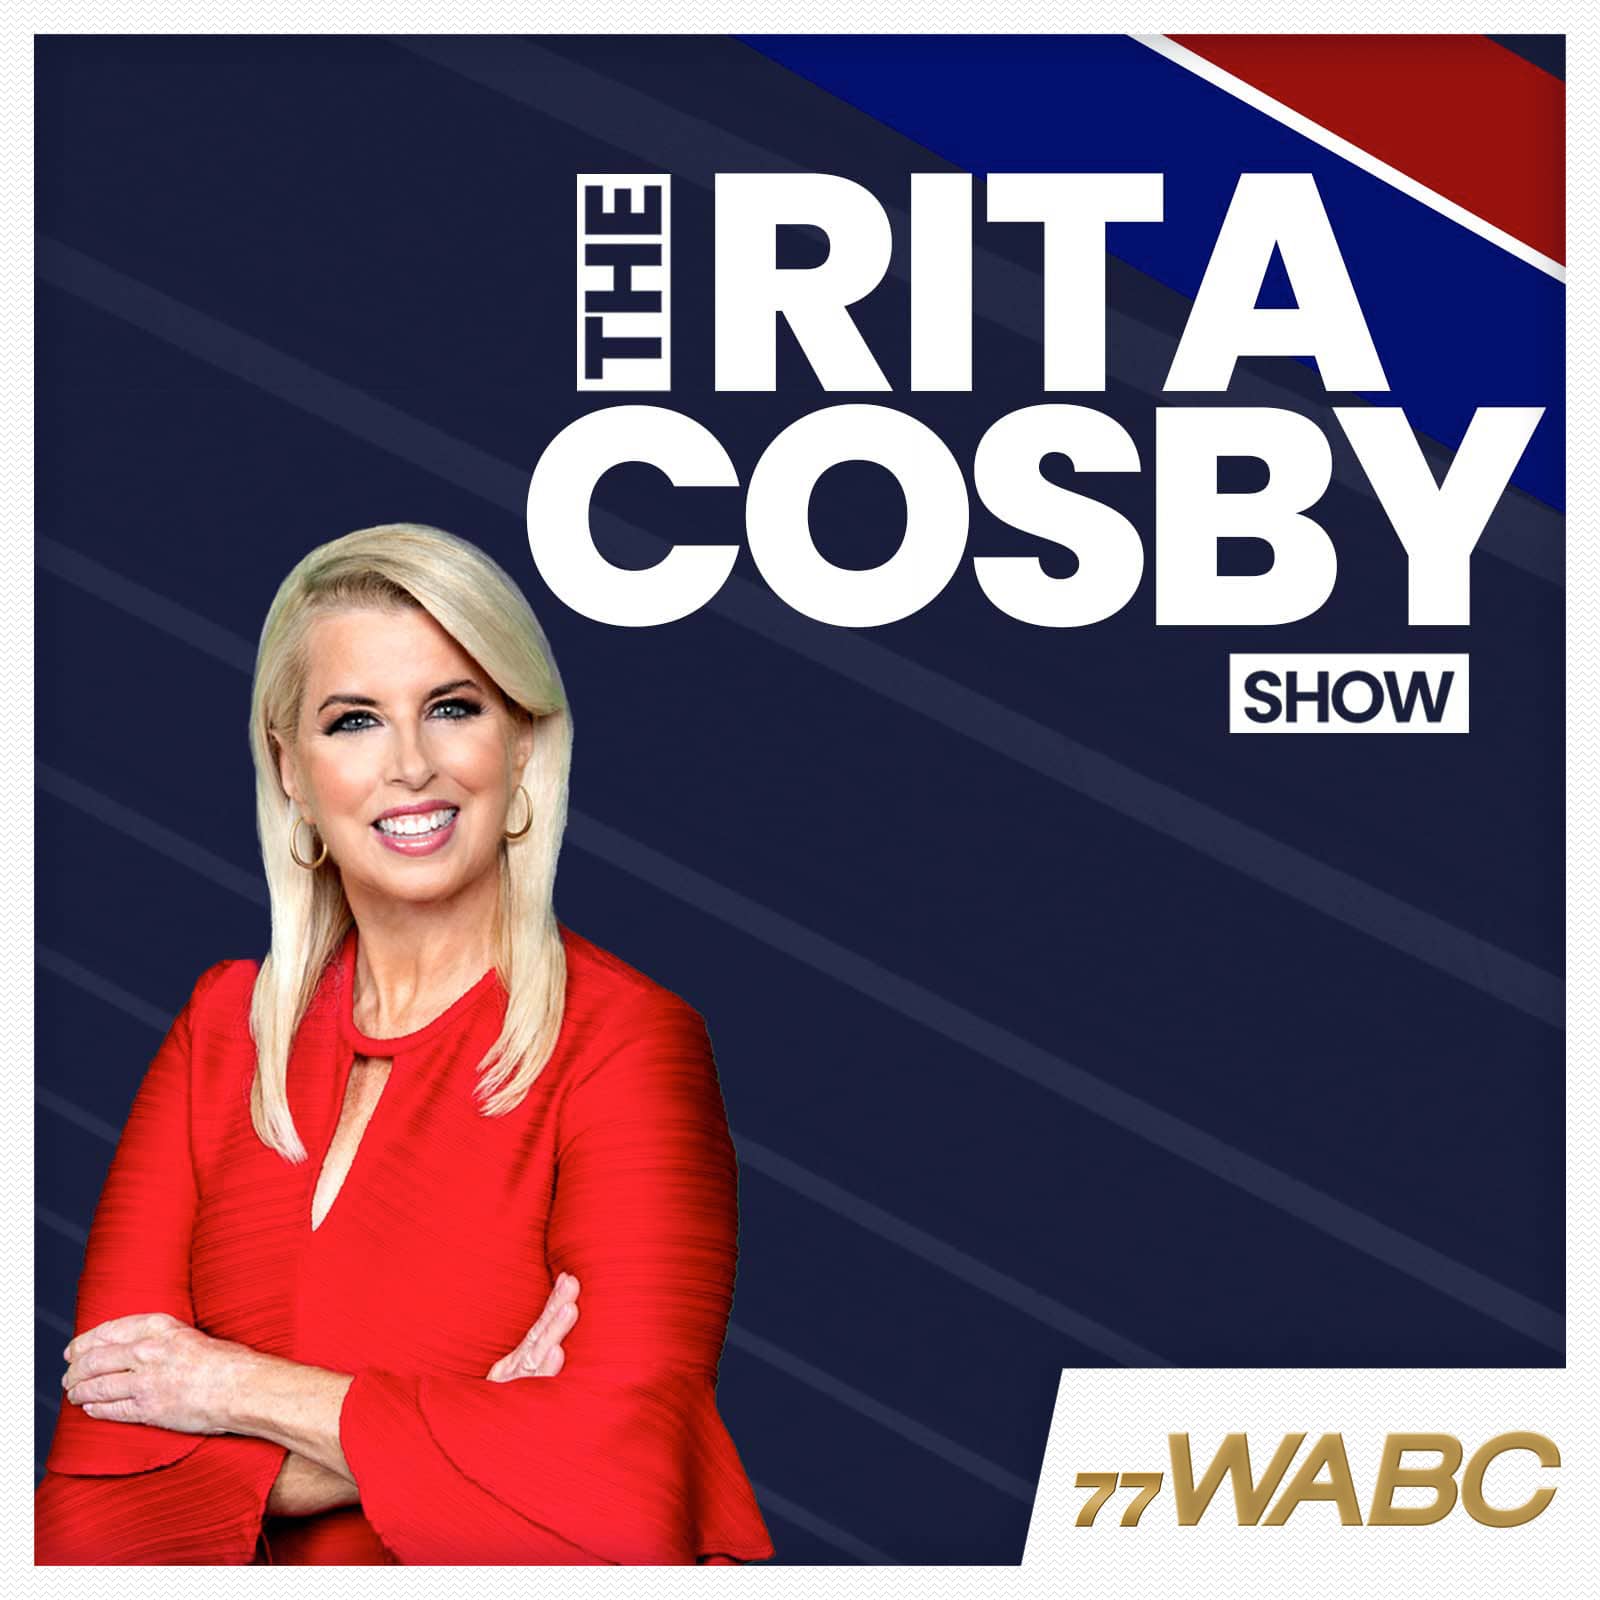 rita-cosby-podcast-new-logo397968